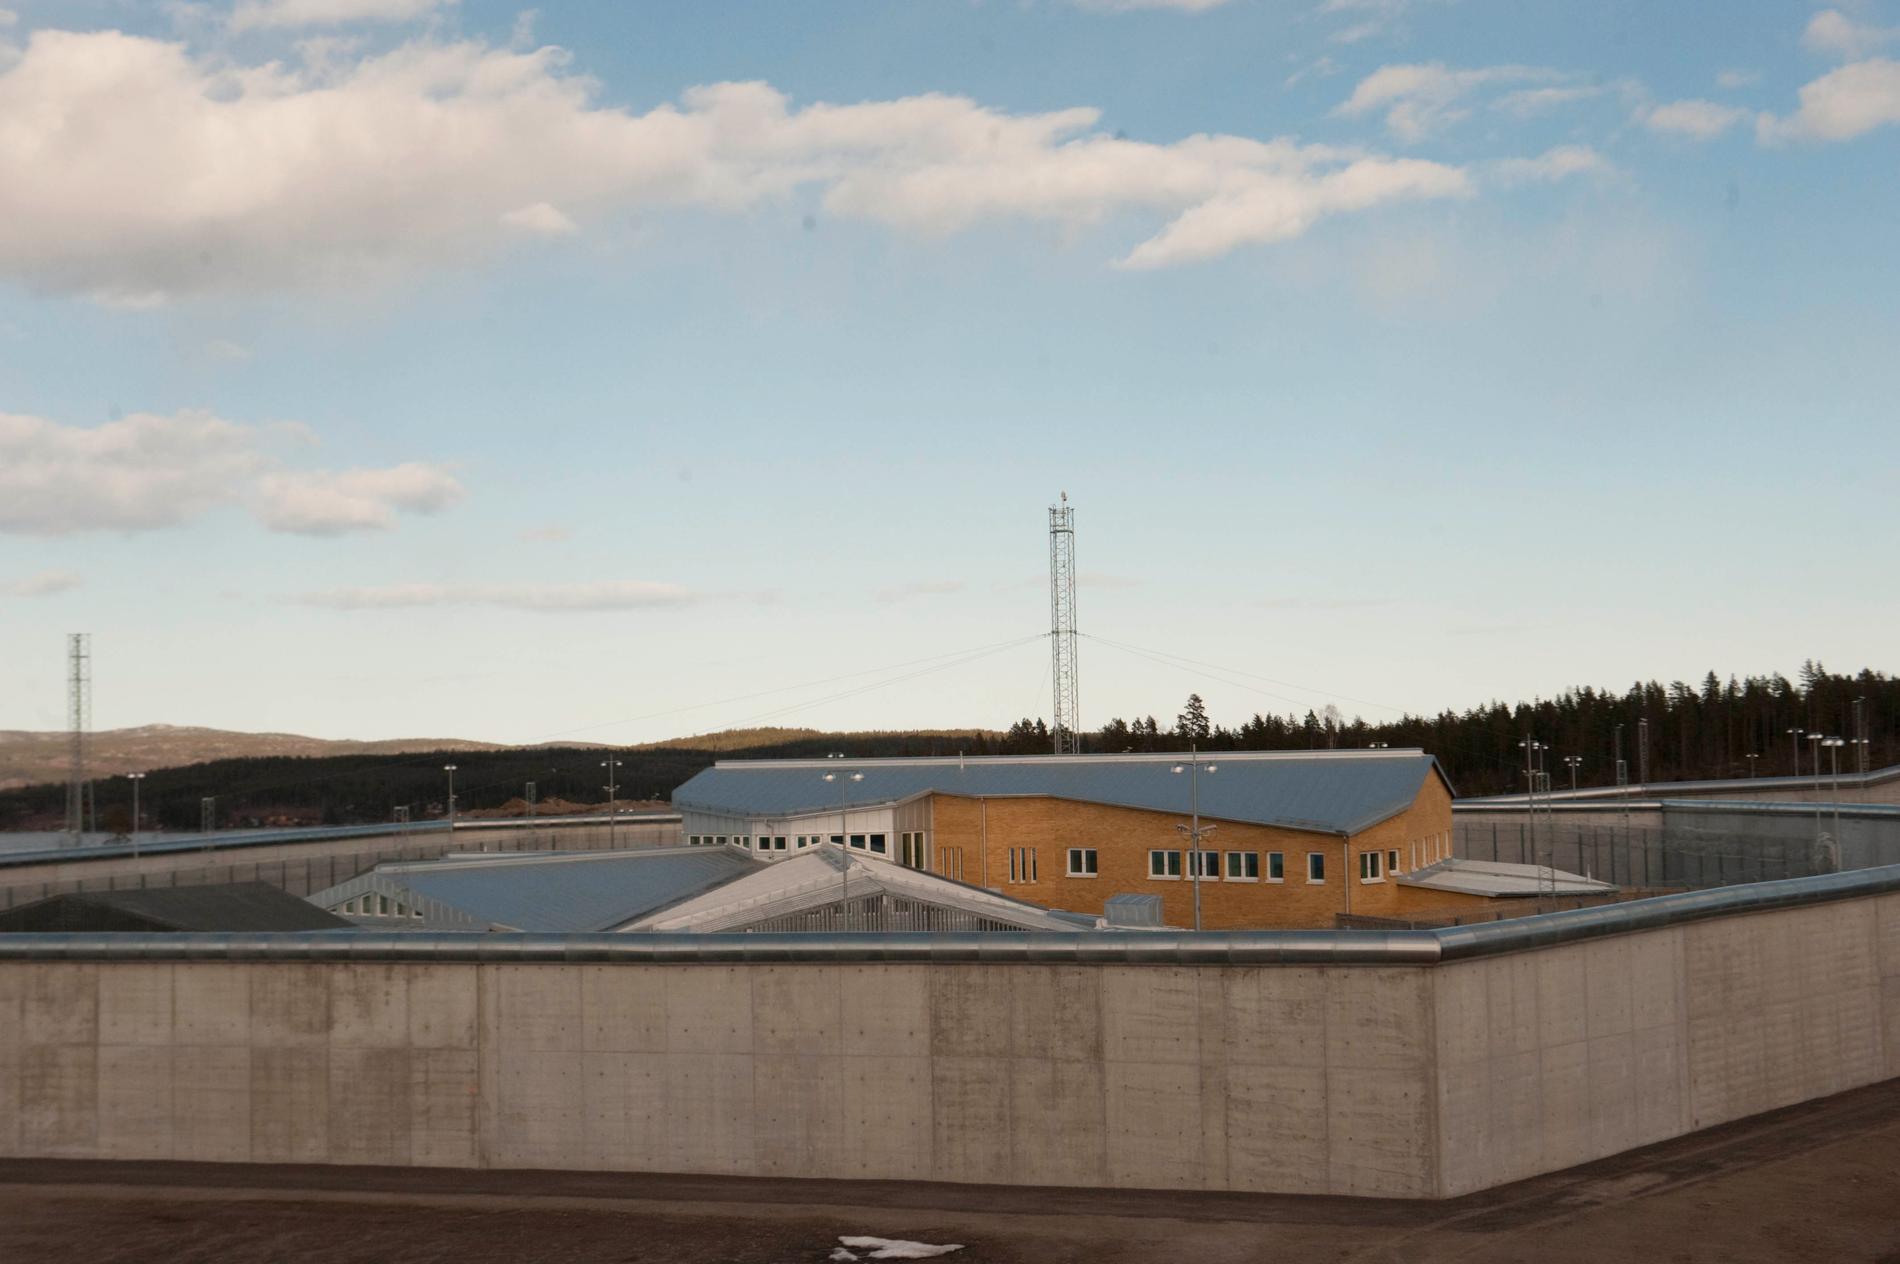 Männen var kollegor och jobbade som kriminalvårdare på Saltviksanstalten i Härnösand.